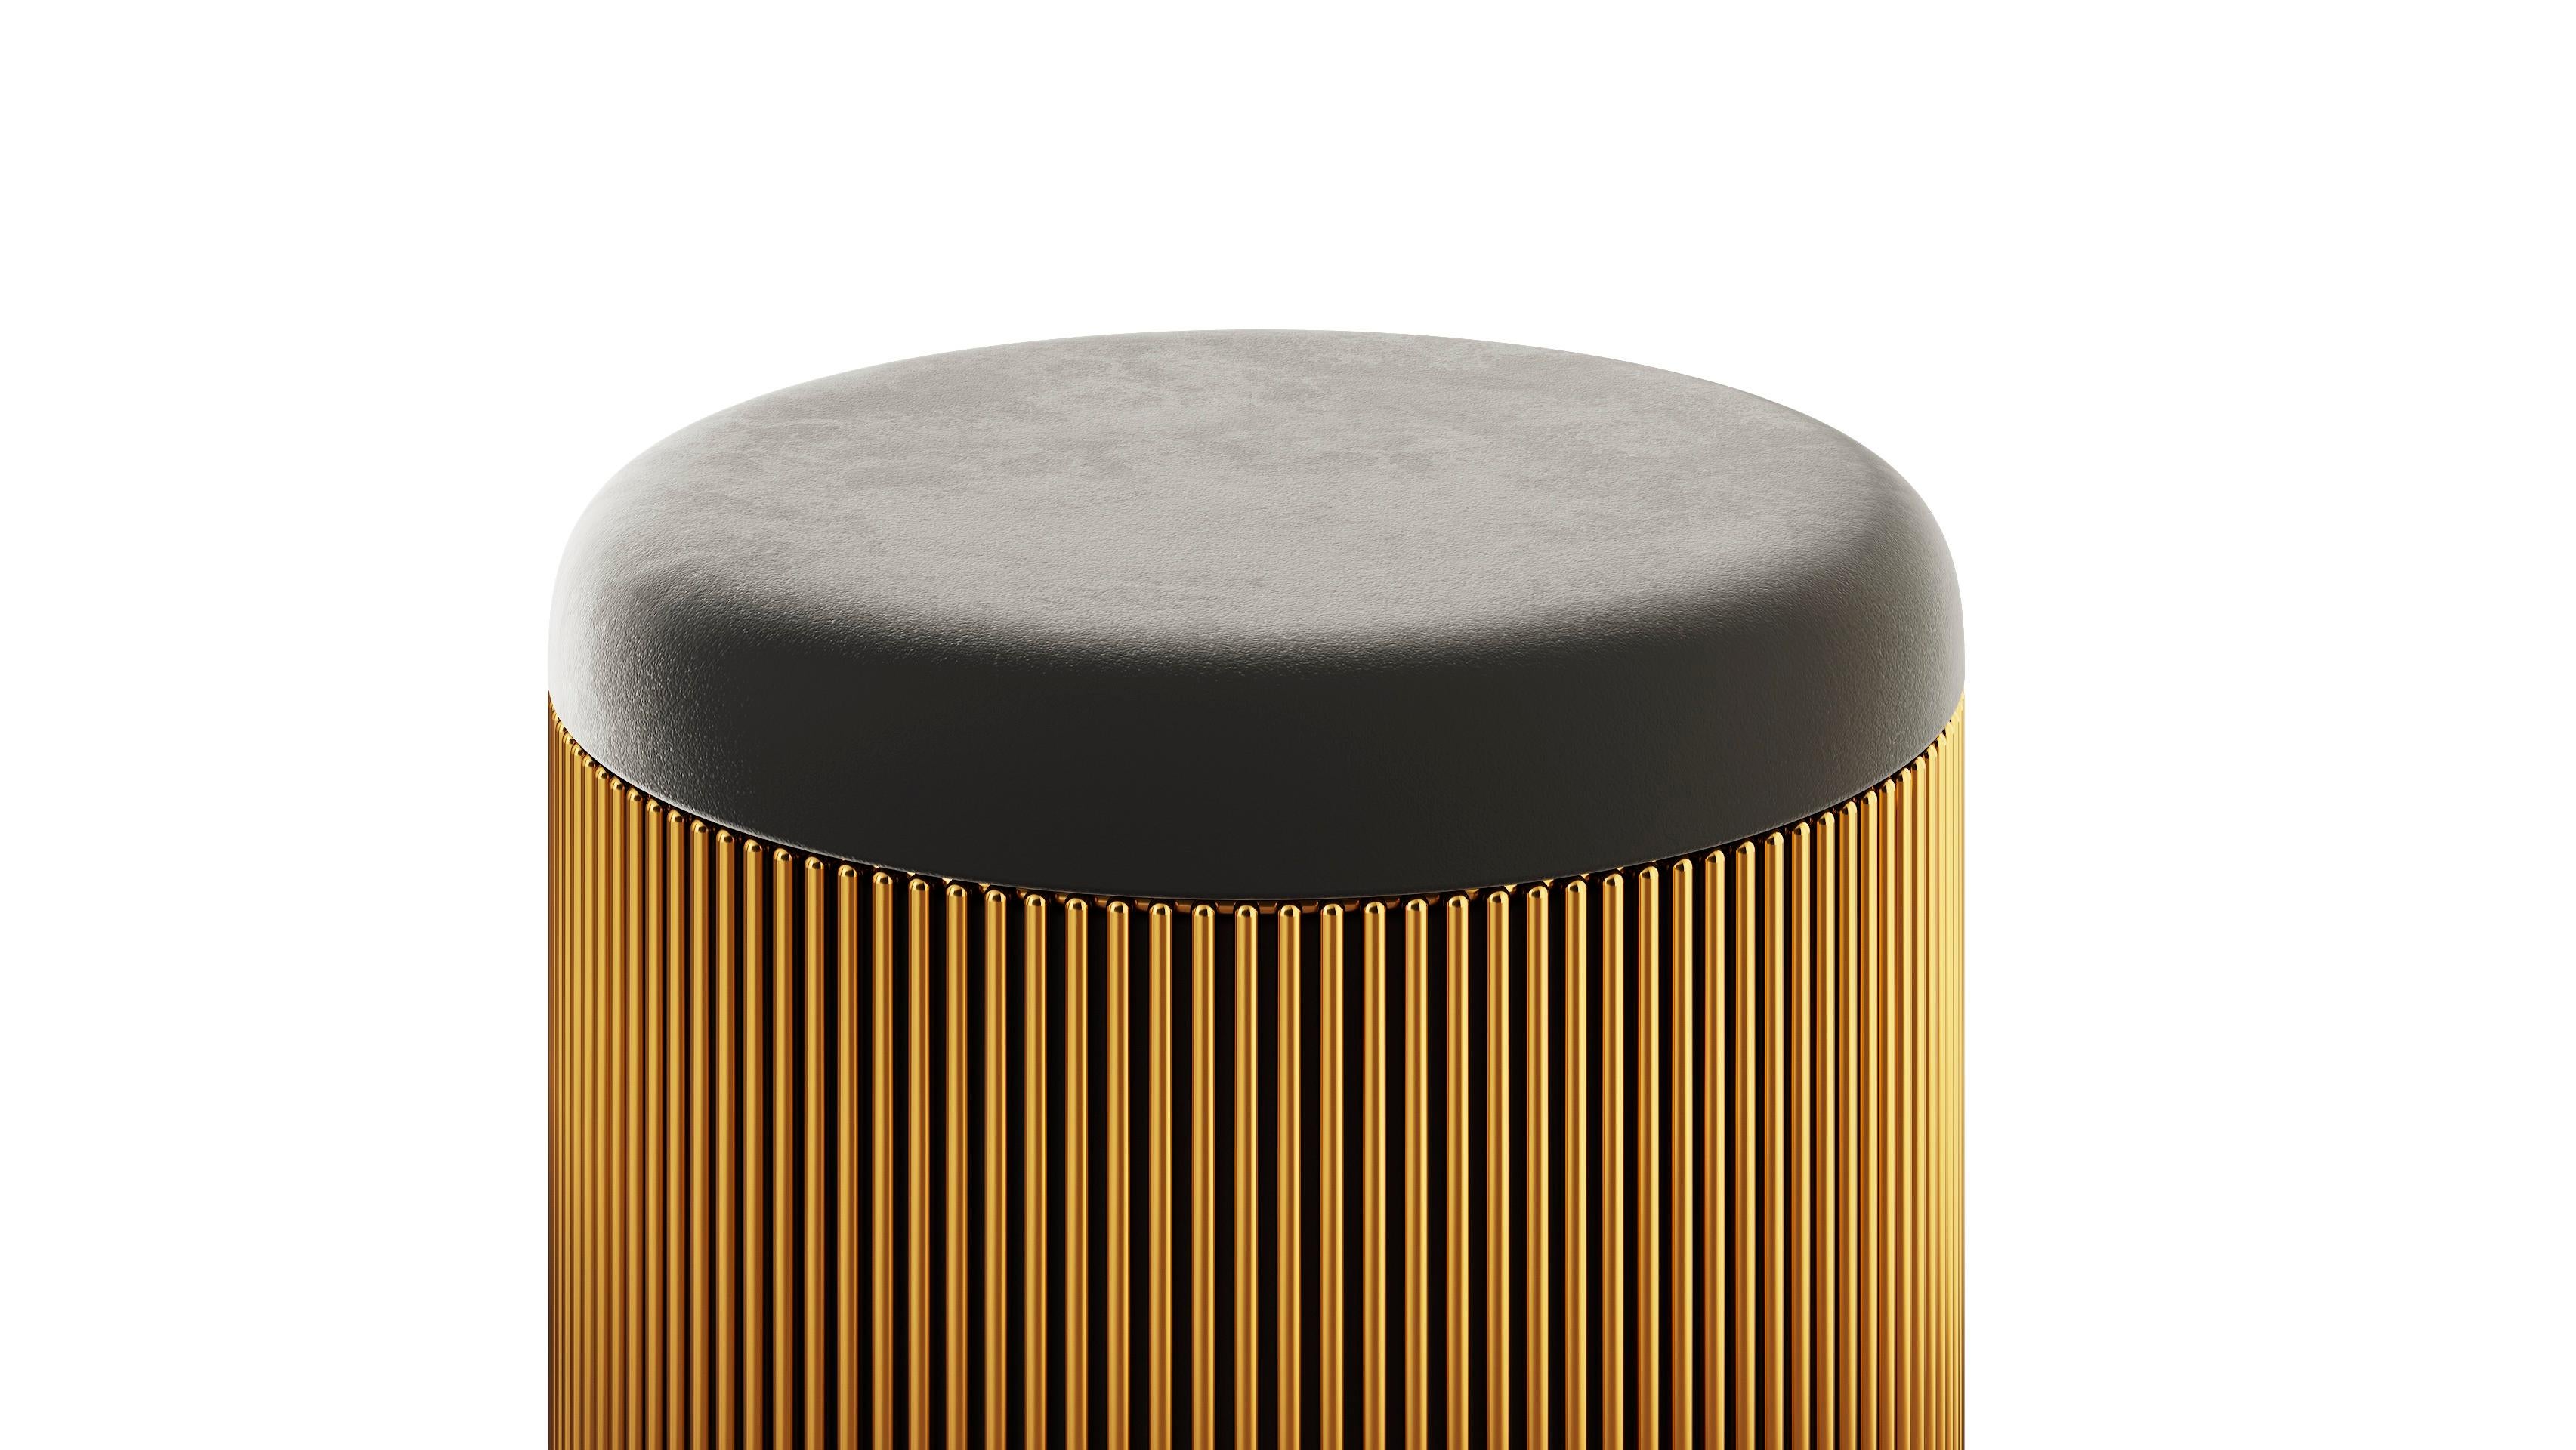 Strings gold pouf mit schwarzem Samt von Nika Zupanc ist ein kleiner, hübscher Sitz mit goldener Stahlspitze drum herum und kann mit dem exquisiten Strings Beauty Table kombiniert werden.

Das Wort Saiten weckt in uns die Vorstellung von